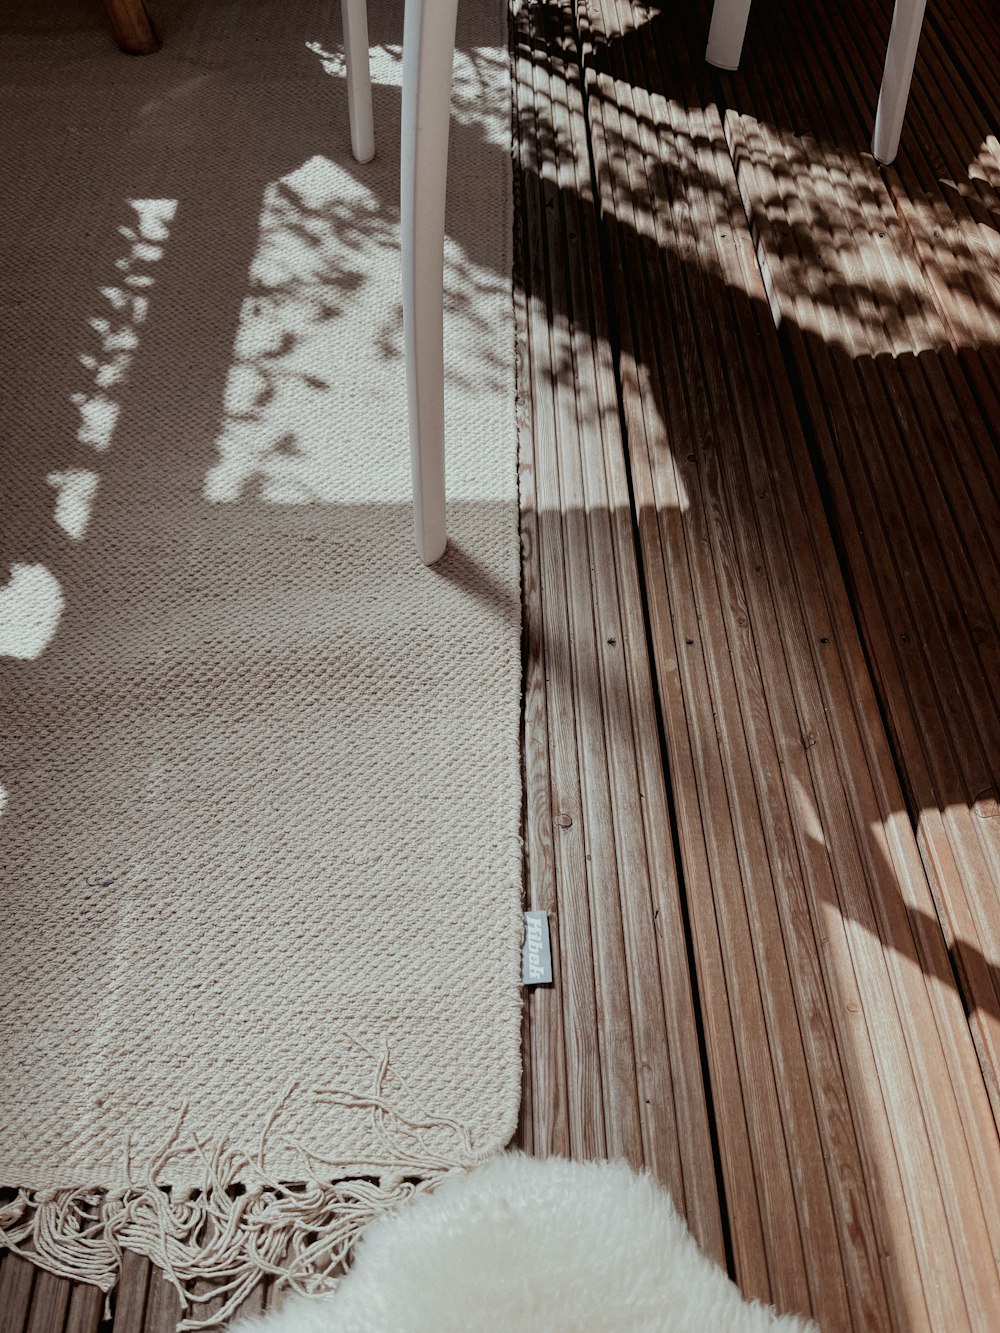 Sombra de persona en suelo de madera